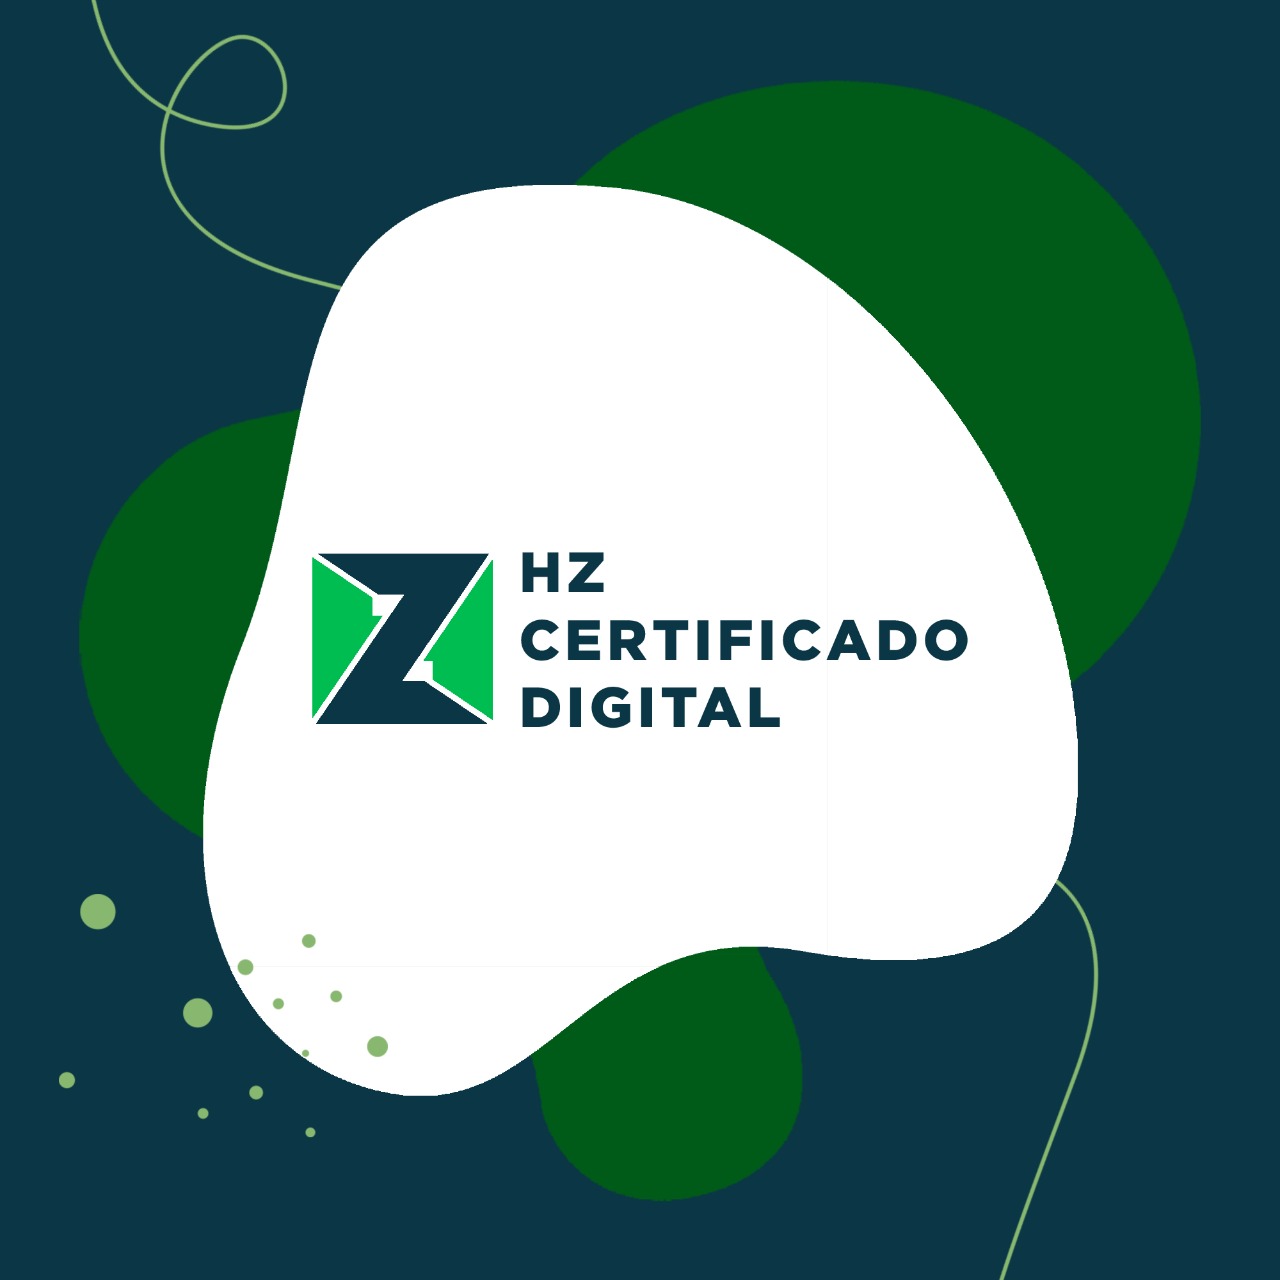 hz certificado digital